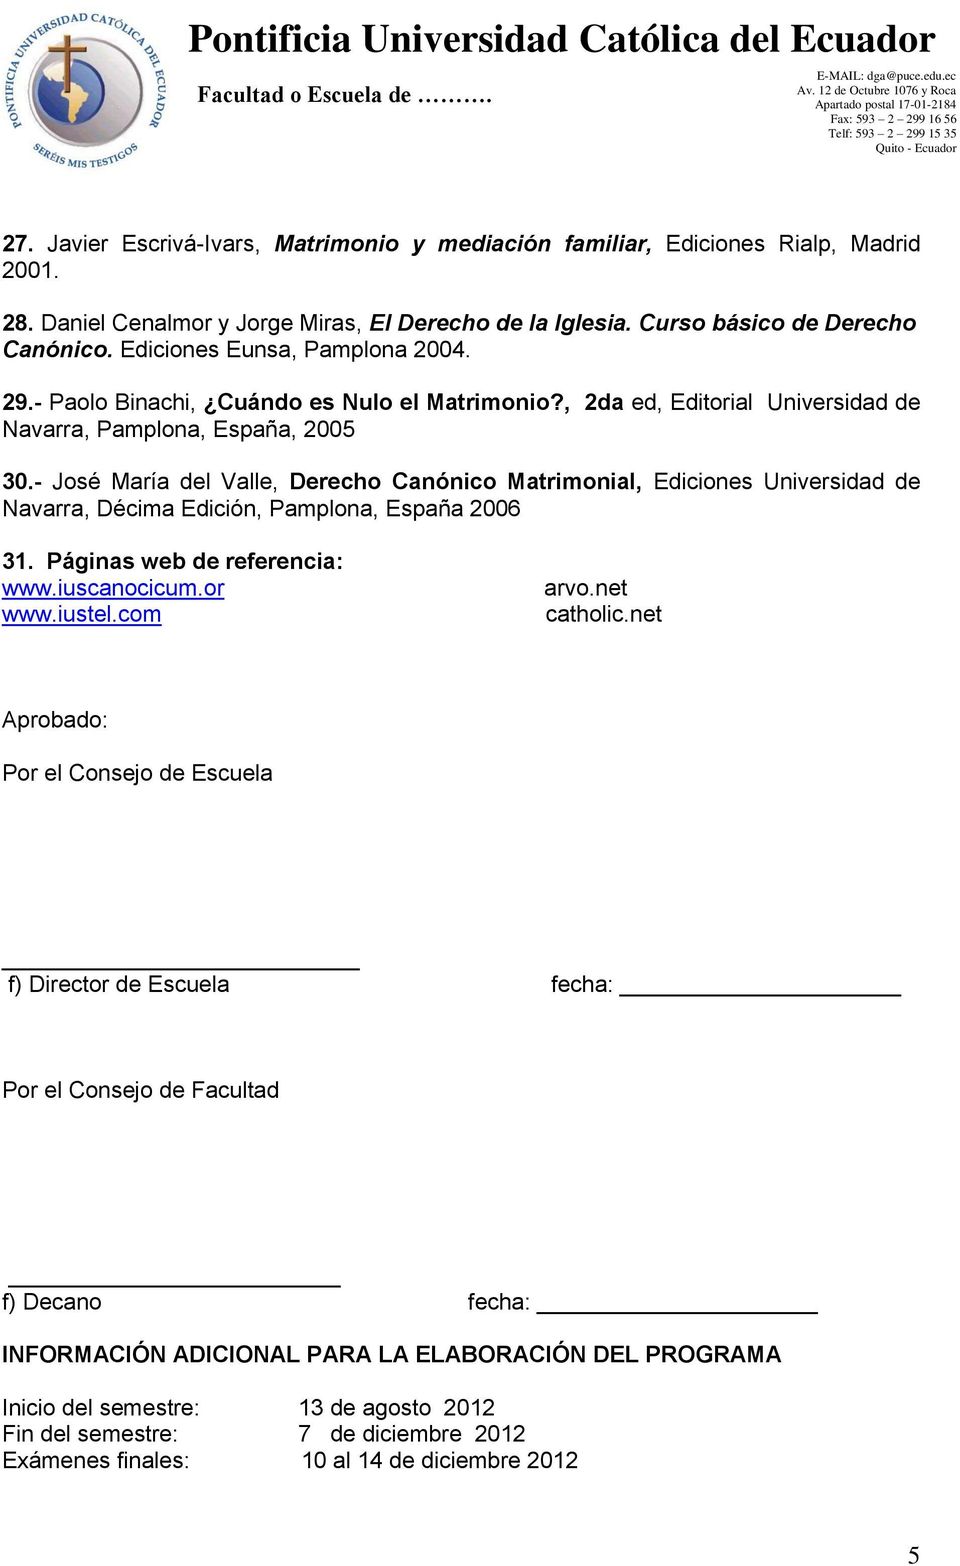 - José María del Valle, Derecho Canónico Matrimonial, Ediciones Universidad de Navarra, Décima Edición, Pamplona, España 2006 31. Páginas web de referencia: www.iuscanocicum.or www.iustel.com arvo.